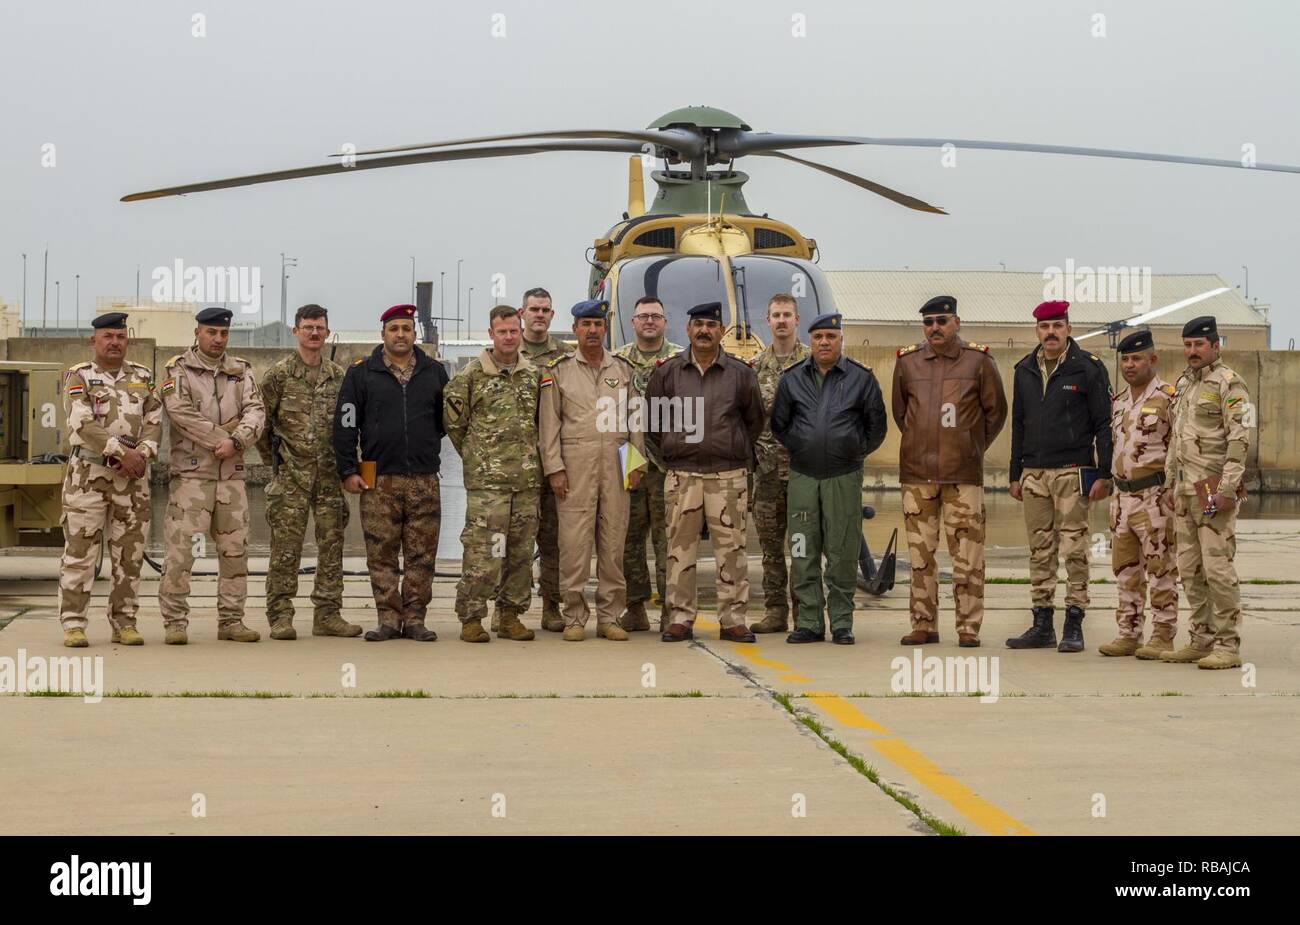 Illustri visitatori compreso di USA e soldati iracheni e gli avieri posano per una foto dopo un tour di attività dell'aviazione e le funzionalità di un breve dell'esercito iracheno Aviation Team presso il Camp Taji, Iraq, Dic 20, 2018. La Coalizione Aviation consulenza e formazione del team si alzò in piedi nel febbraio 2018 per migliorare l'ISF dell'aviazione con capacità di formazione condotta a Taji. Foto Stock